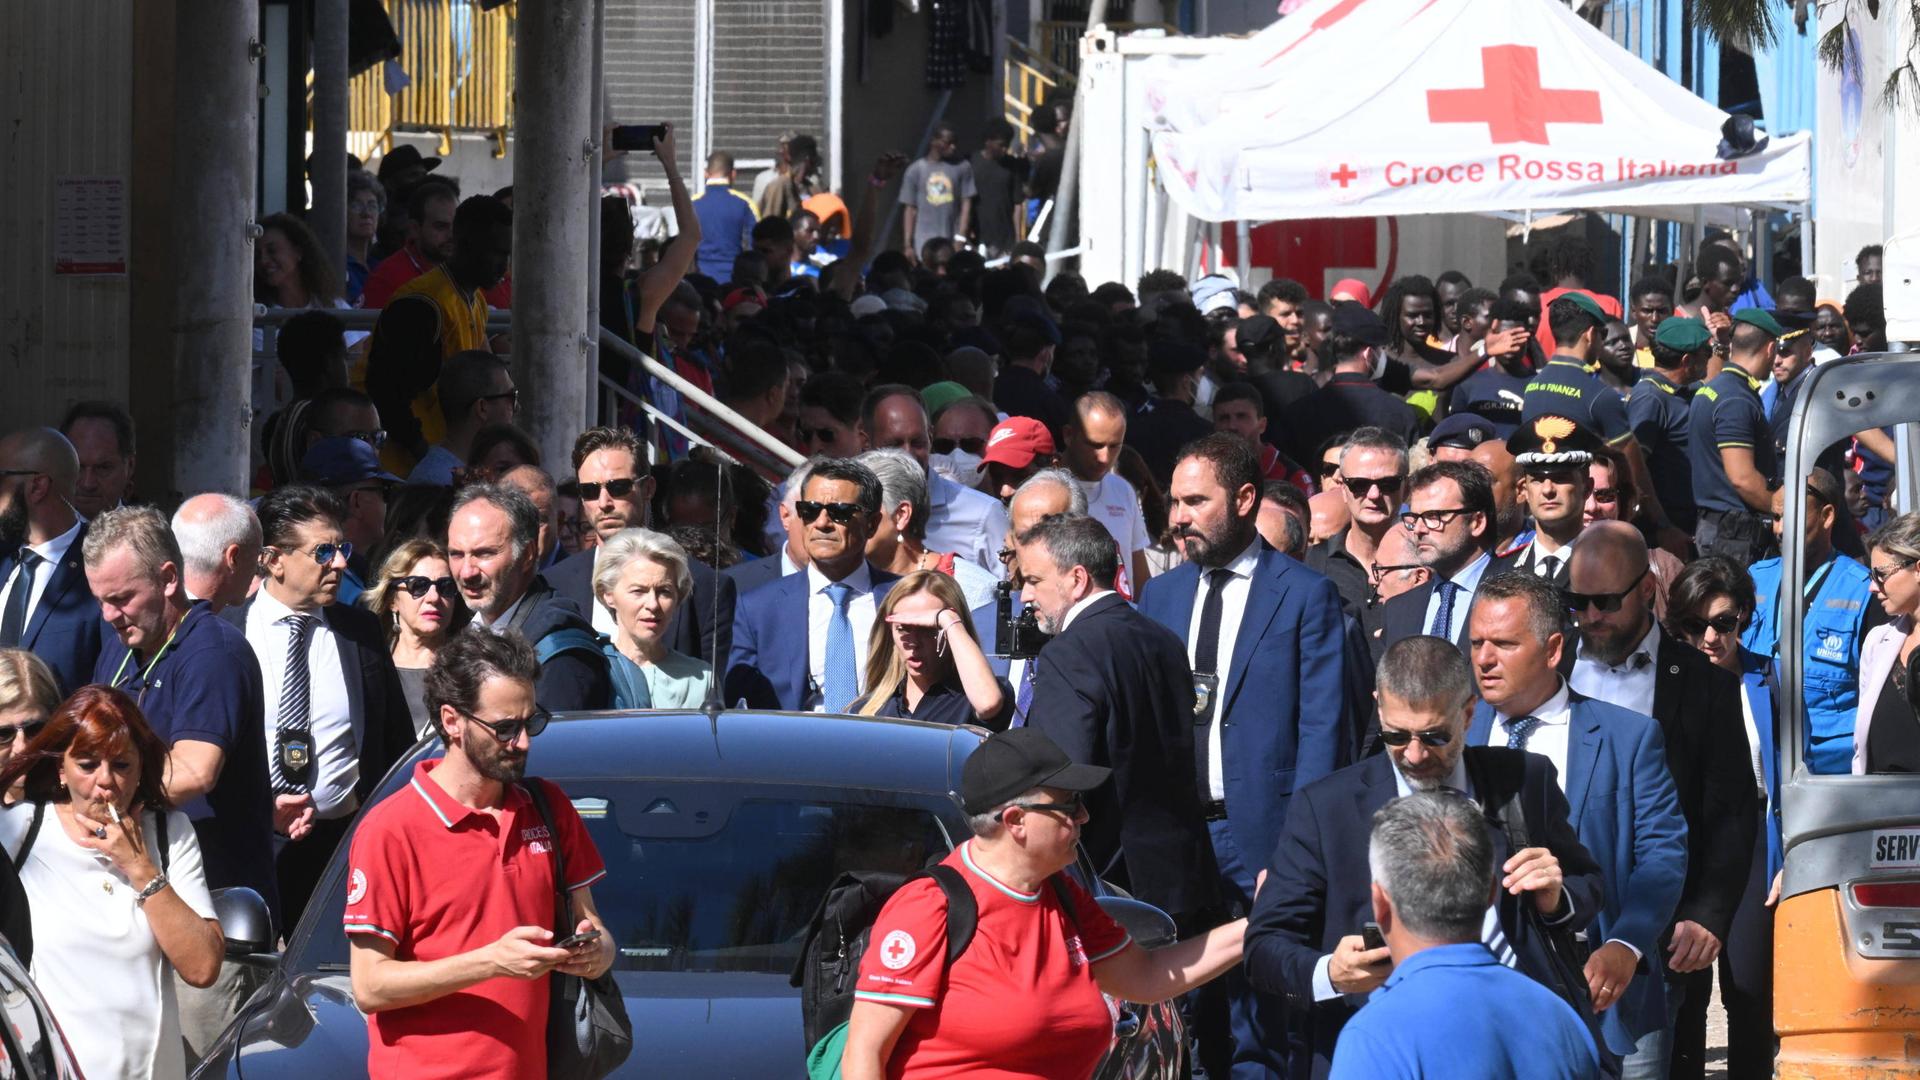 Zu sehen ist eine Szene von der italienischen Insel Lampedusa. Unter anderem EU-Kommissionspräsidentin von der Leyen und Italiens Ministerpräsidentin Meloni laufen hinter einem Auto.